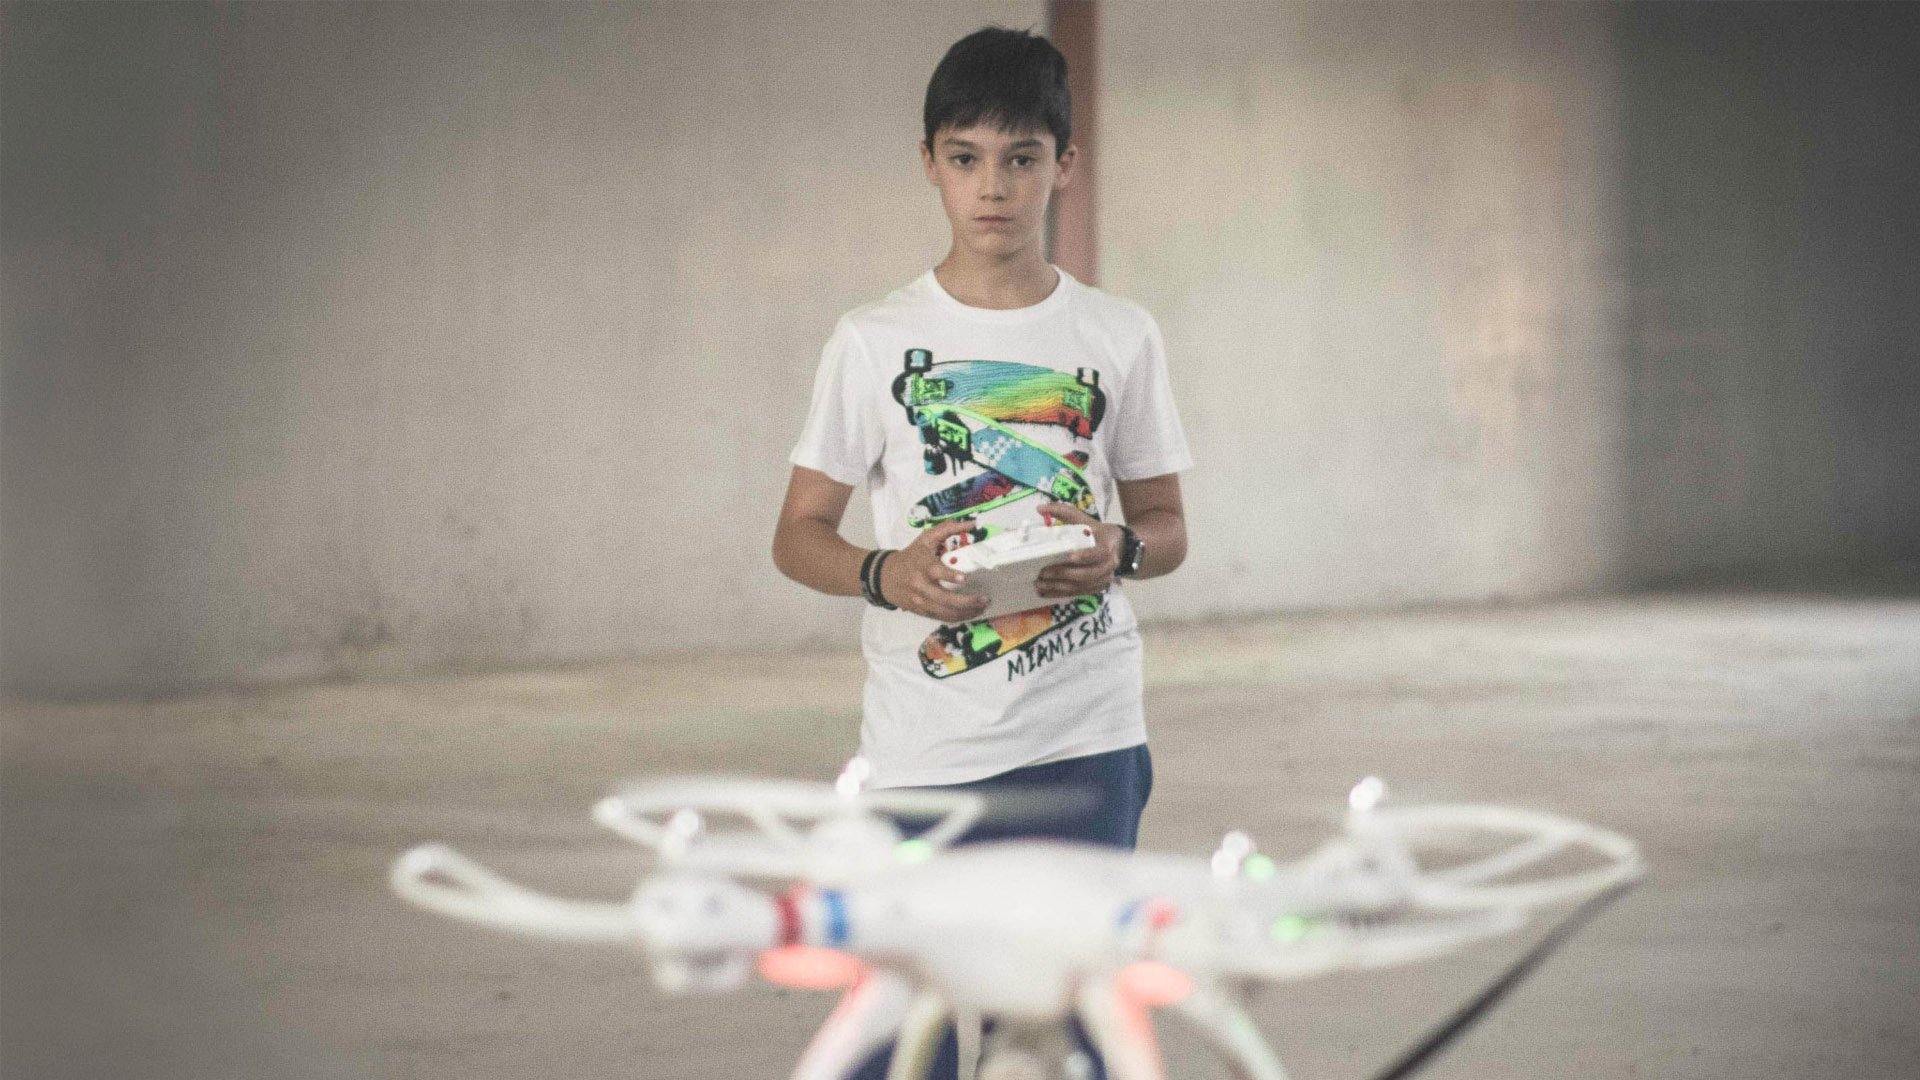 Project Drones voor scholen - EU Dronebewijs